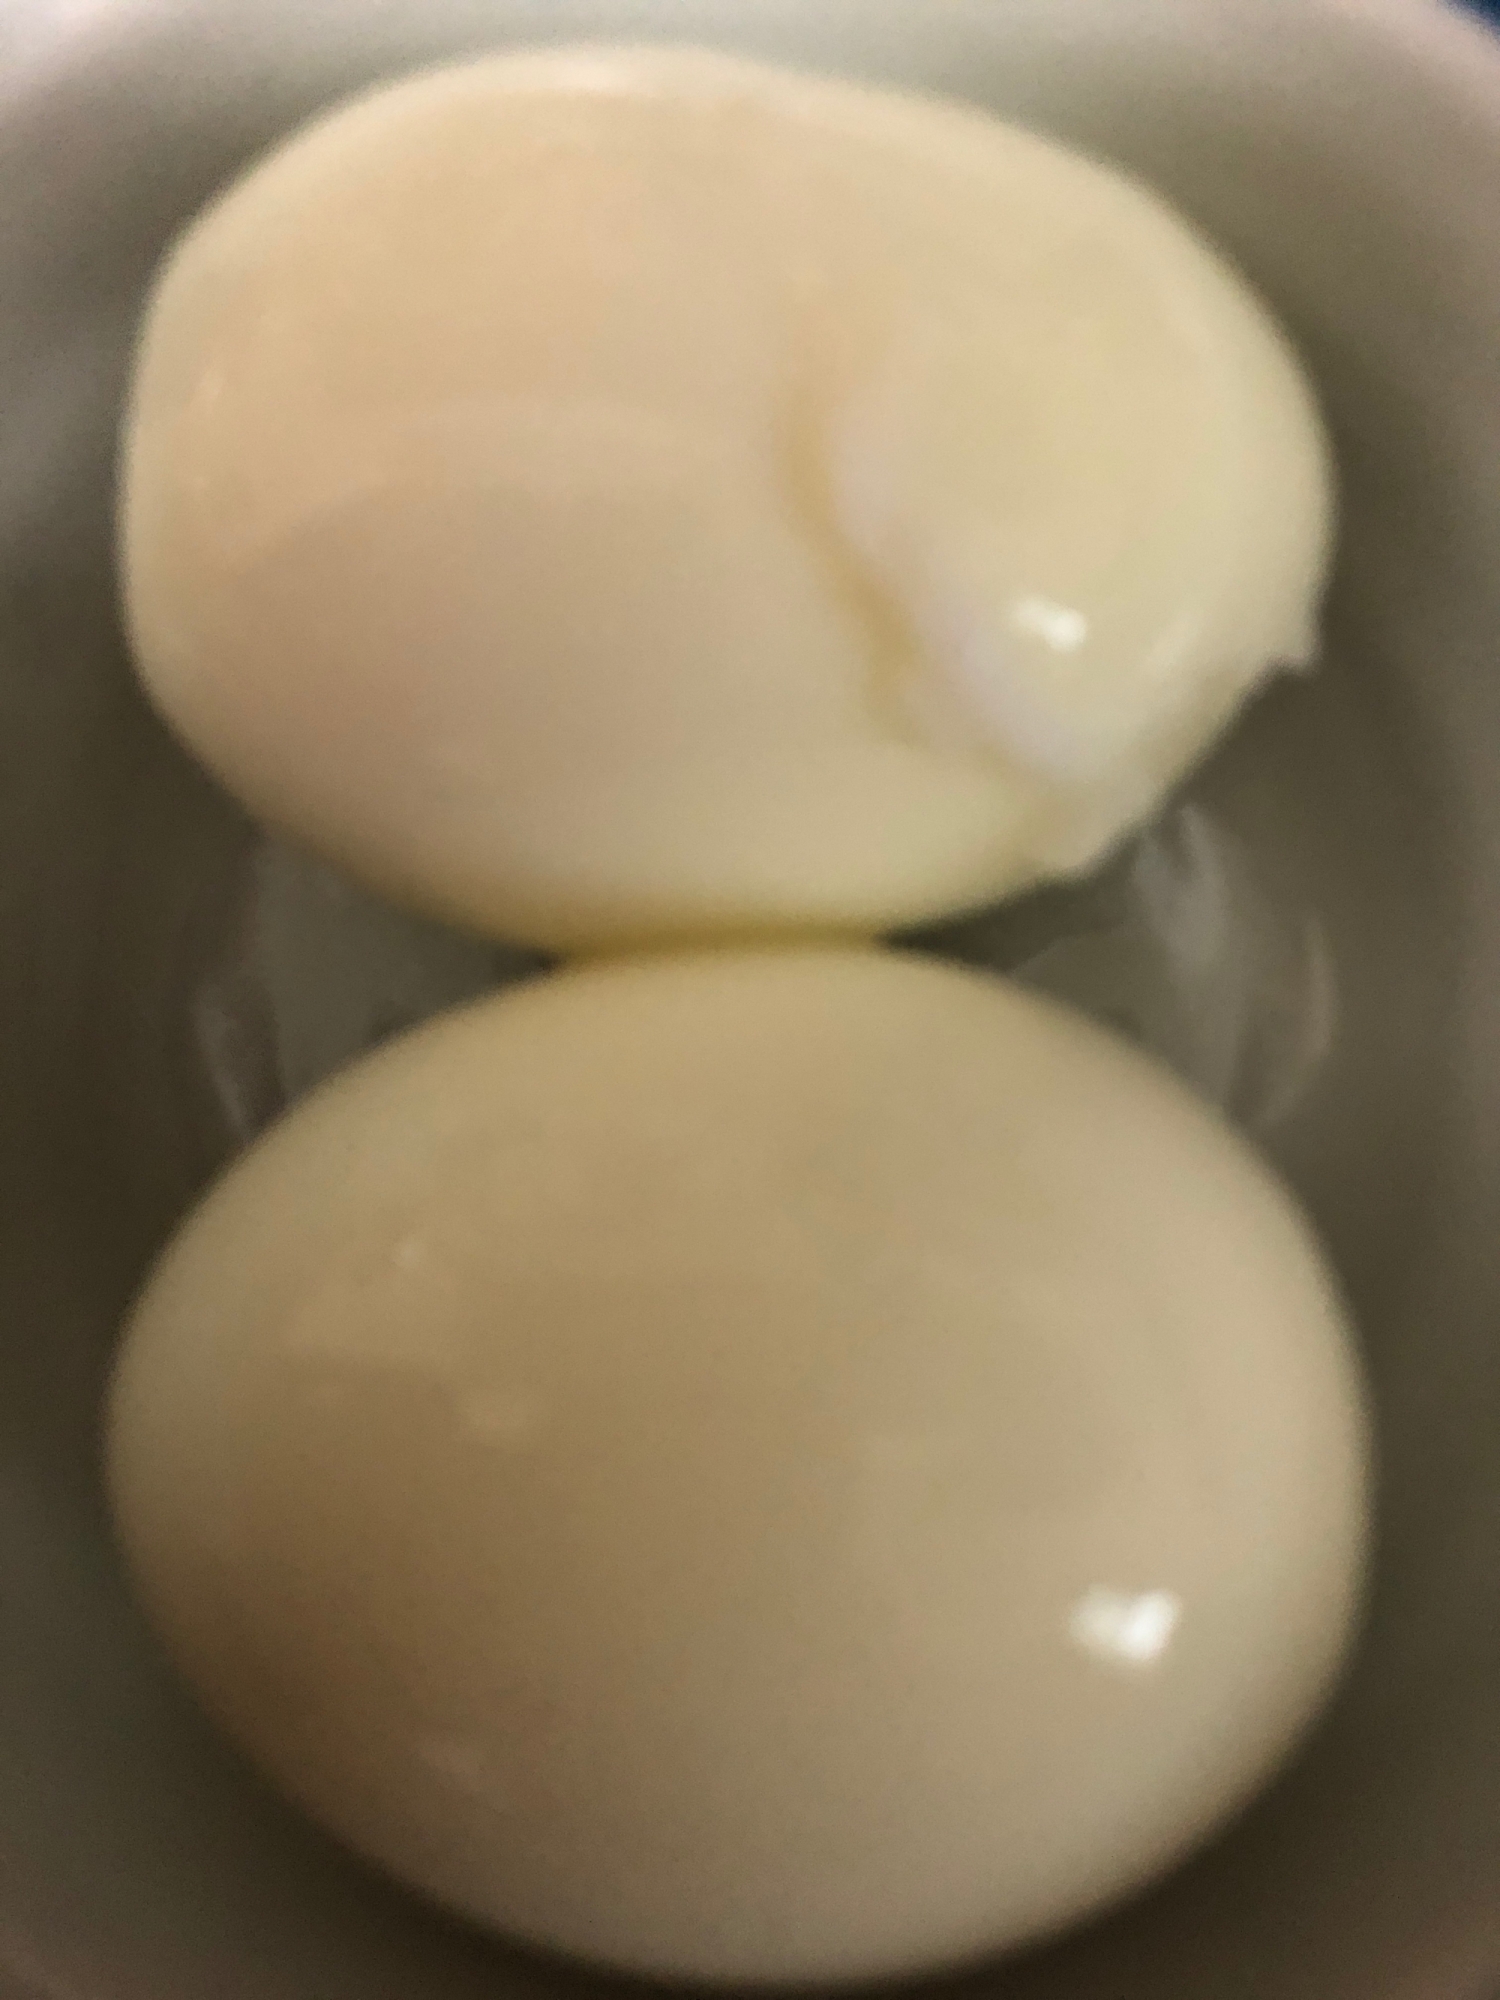 めんつゆ煮卵の作り方